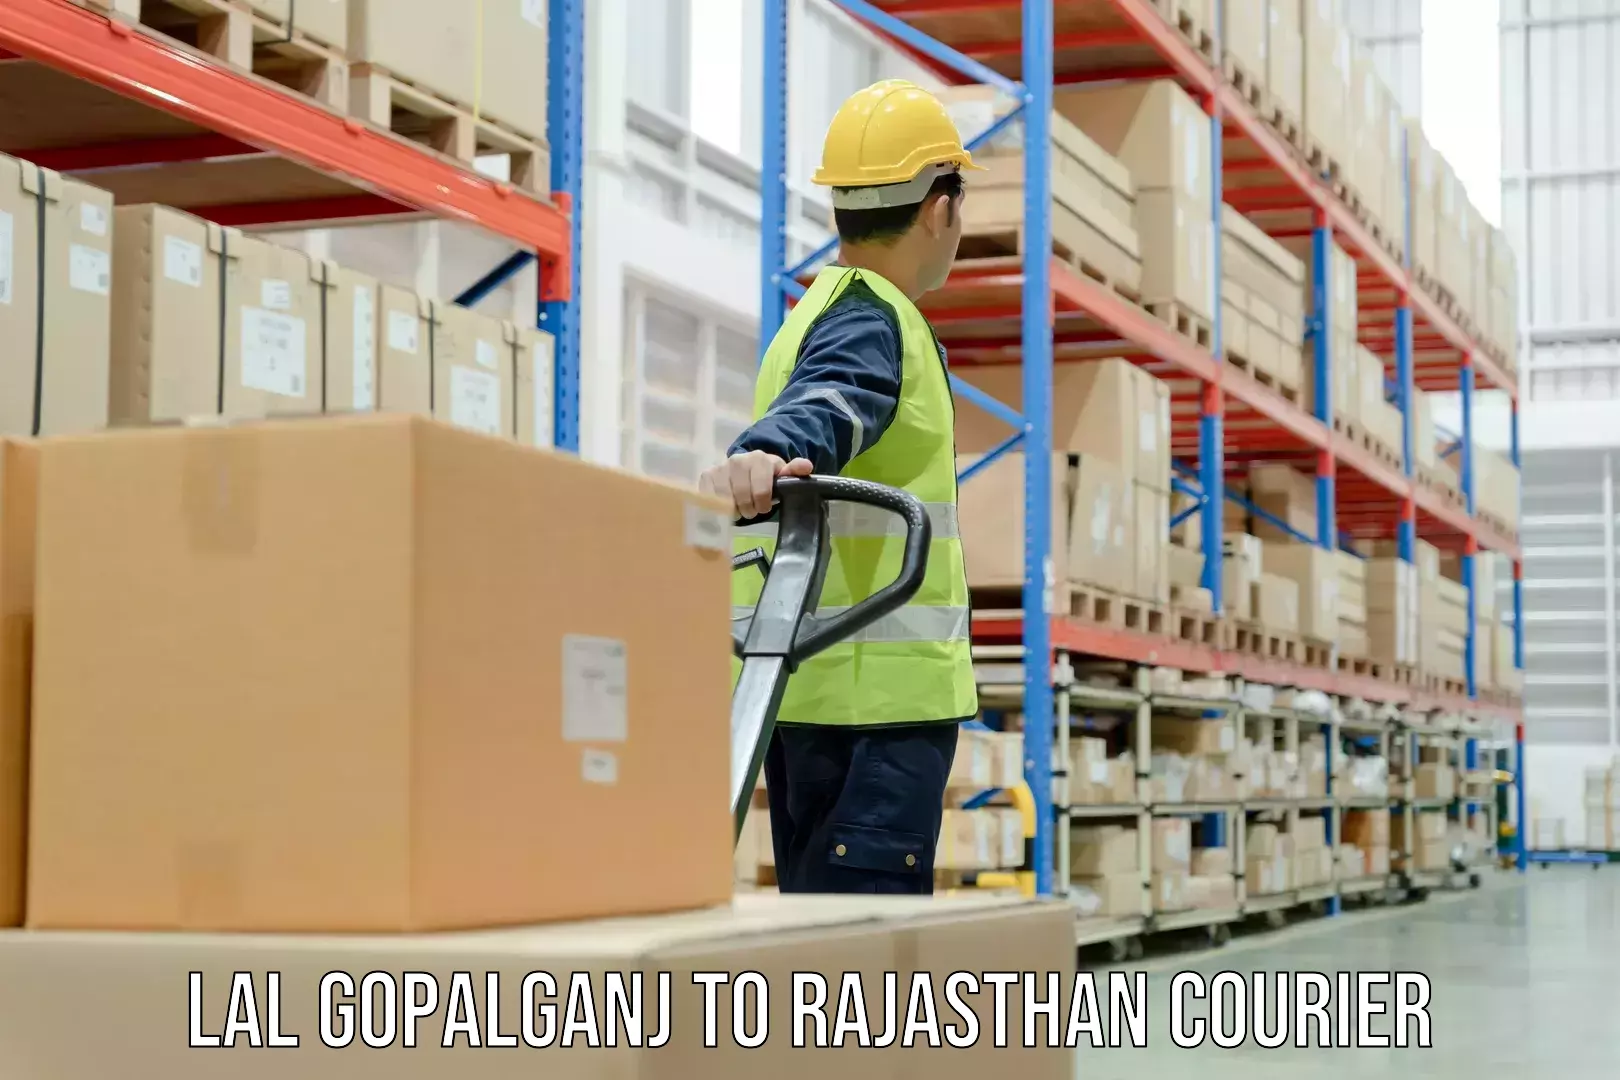 Reliable parcel services Lal Gopalganj to IIT Jodhpur